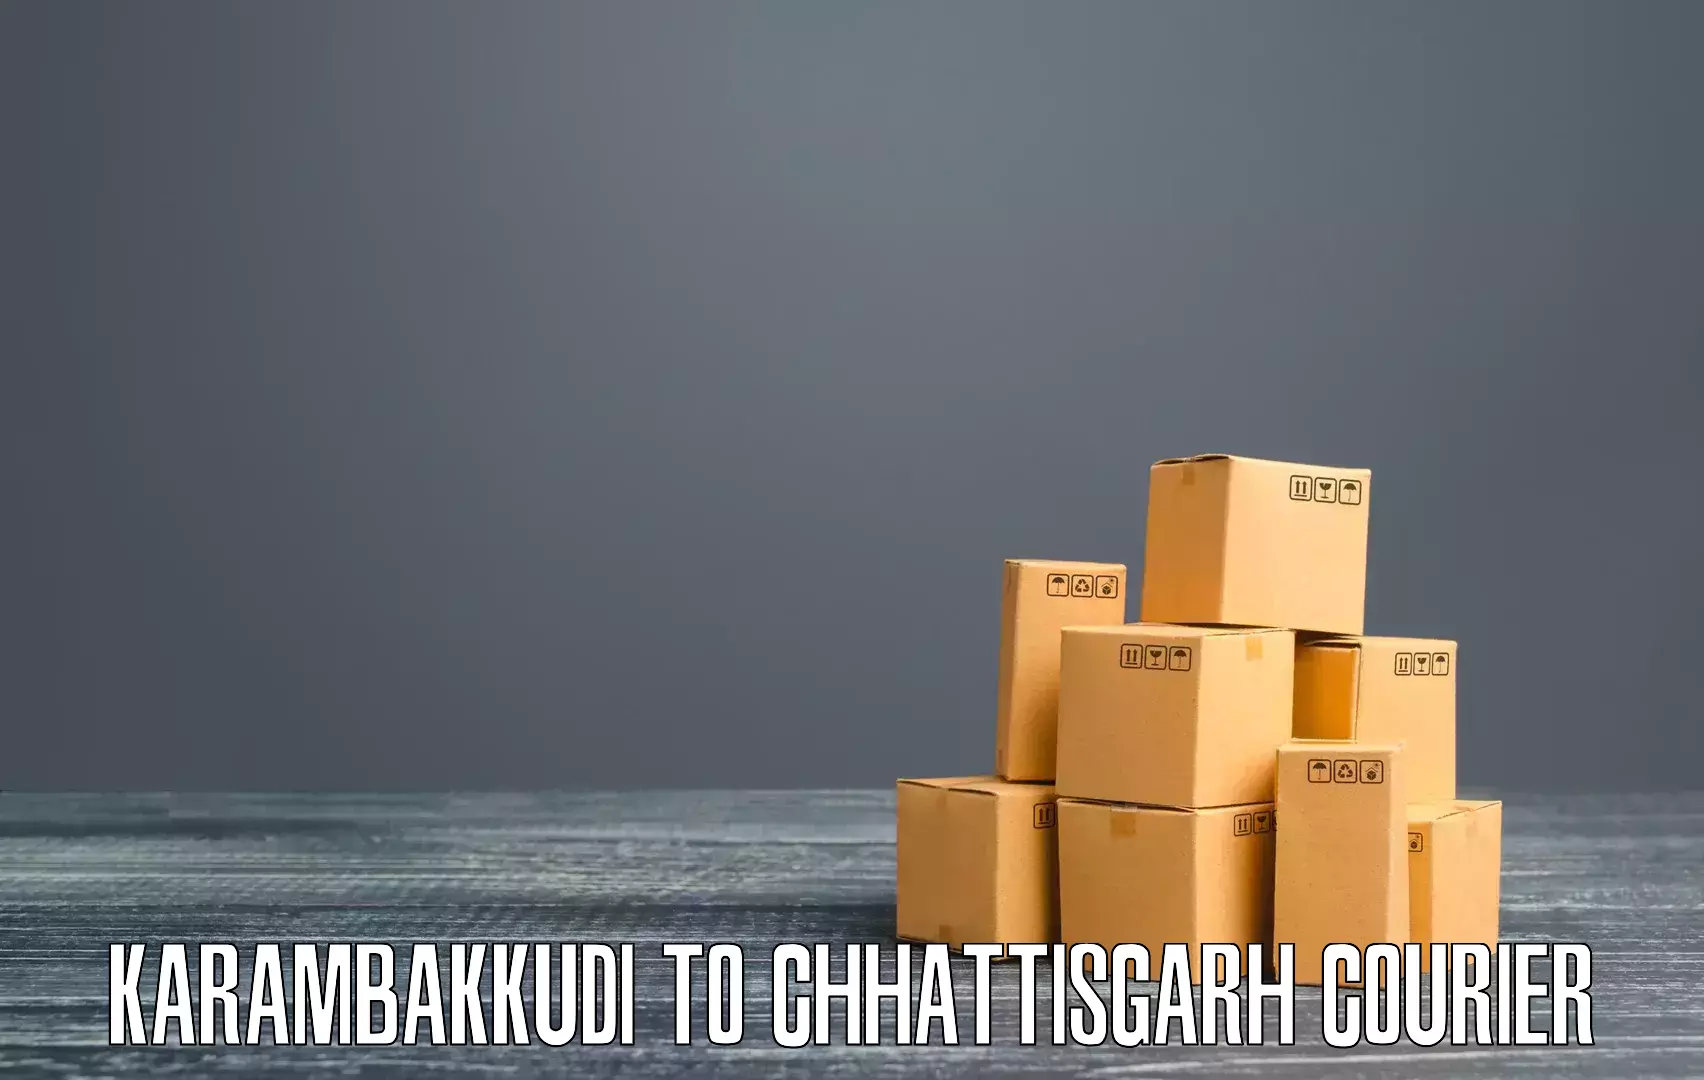 On-demand delivery Karambakkudi to Pakhanjur